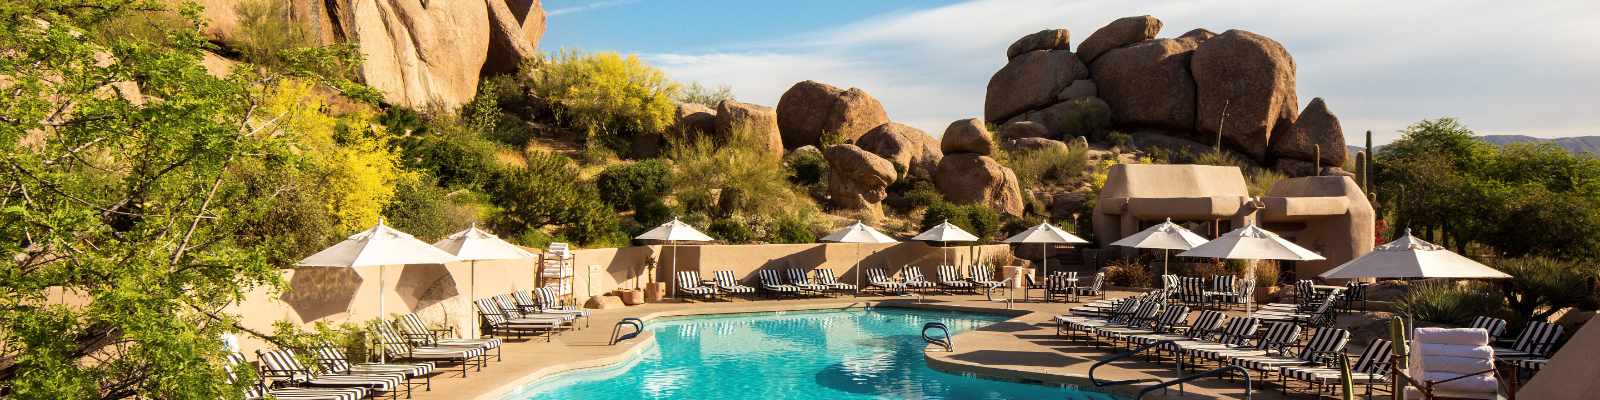 Scottsdale Boulders Resort Pool (photo by Boulders Resort and Spa Scottsdale)